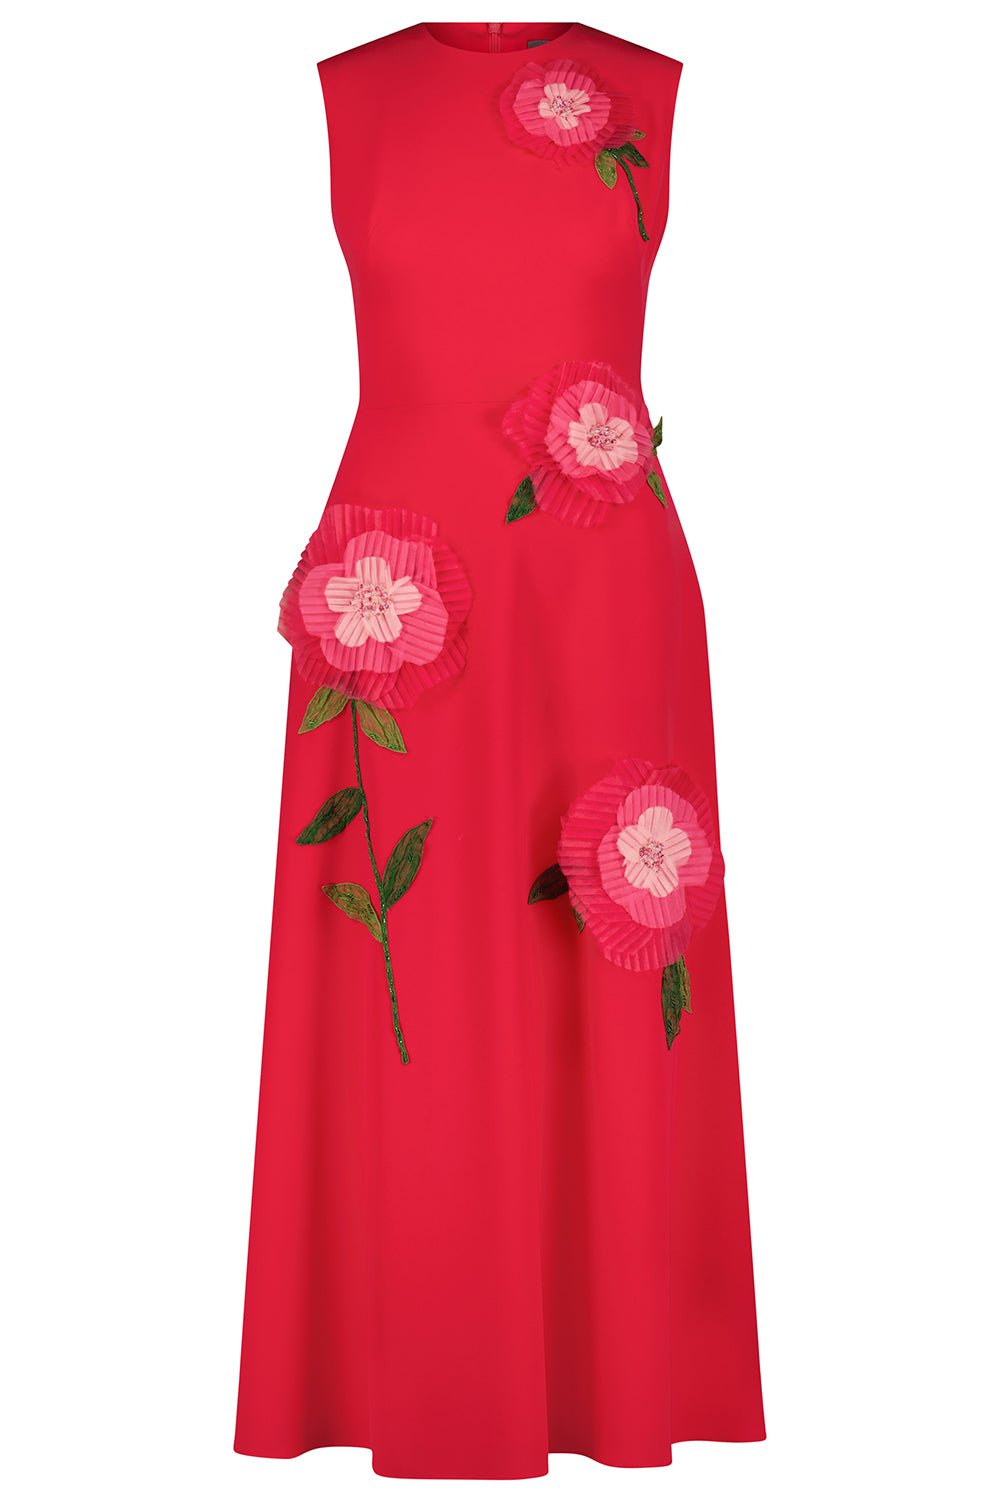 LELA ROSE-Embroidered Full Skirt Dress-